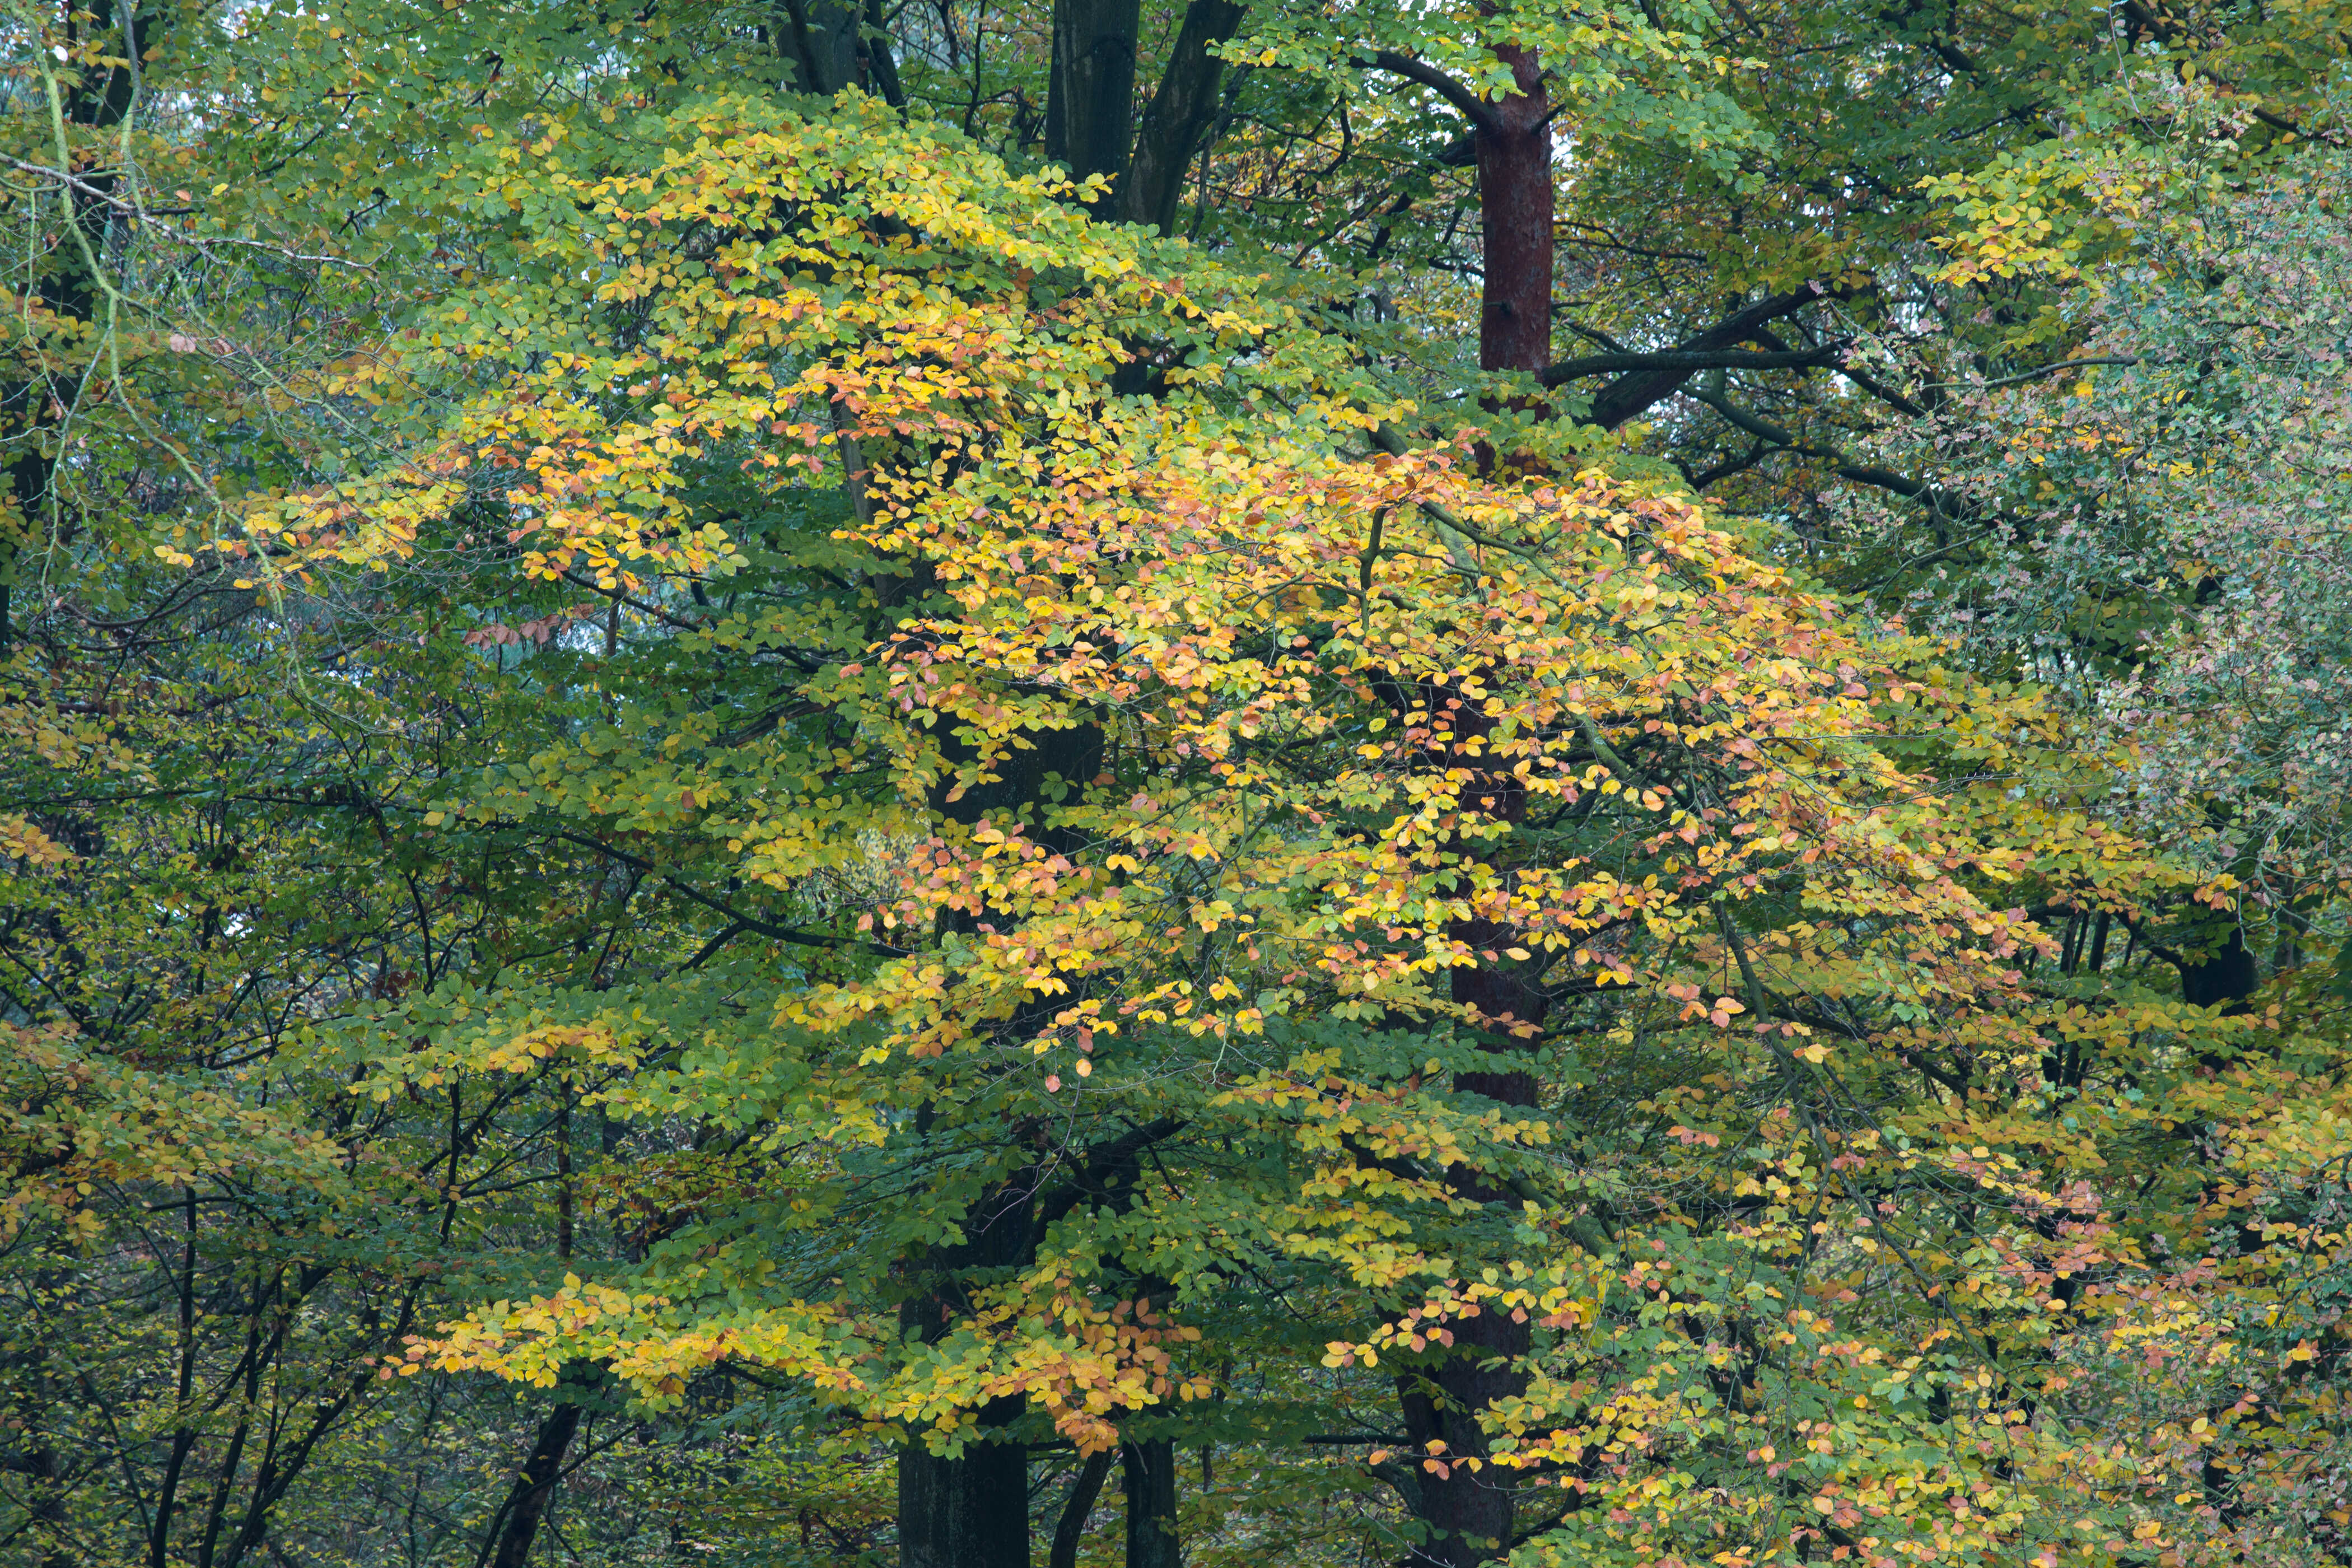 gelb-grüne Blätter zur Herbstfärbung